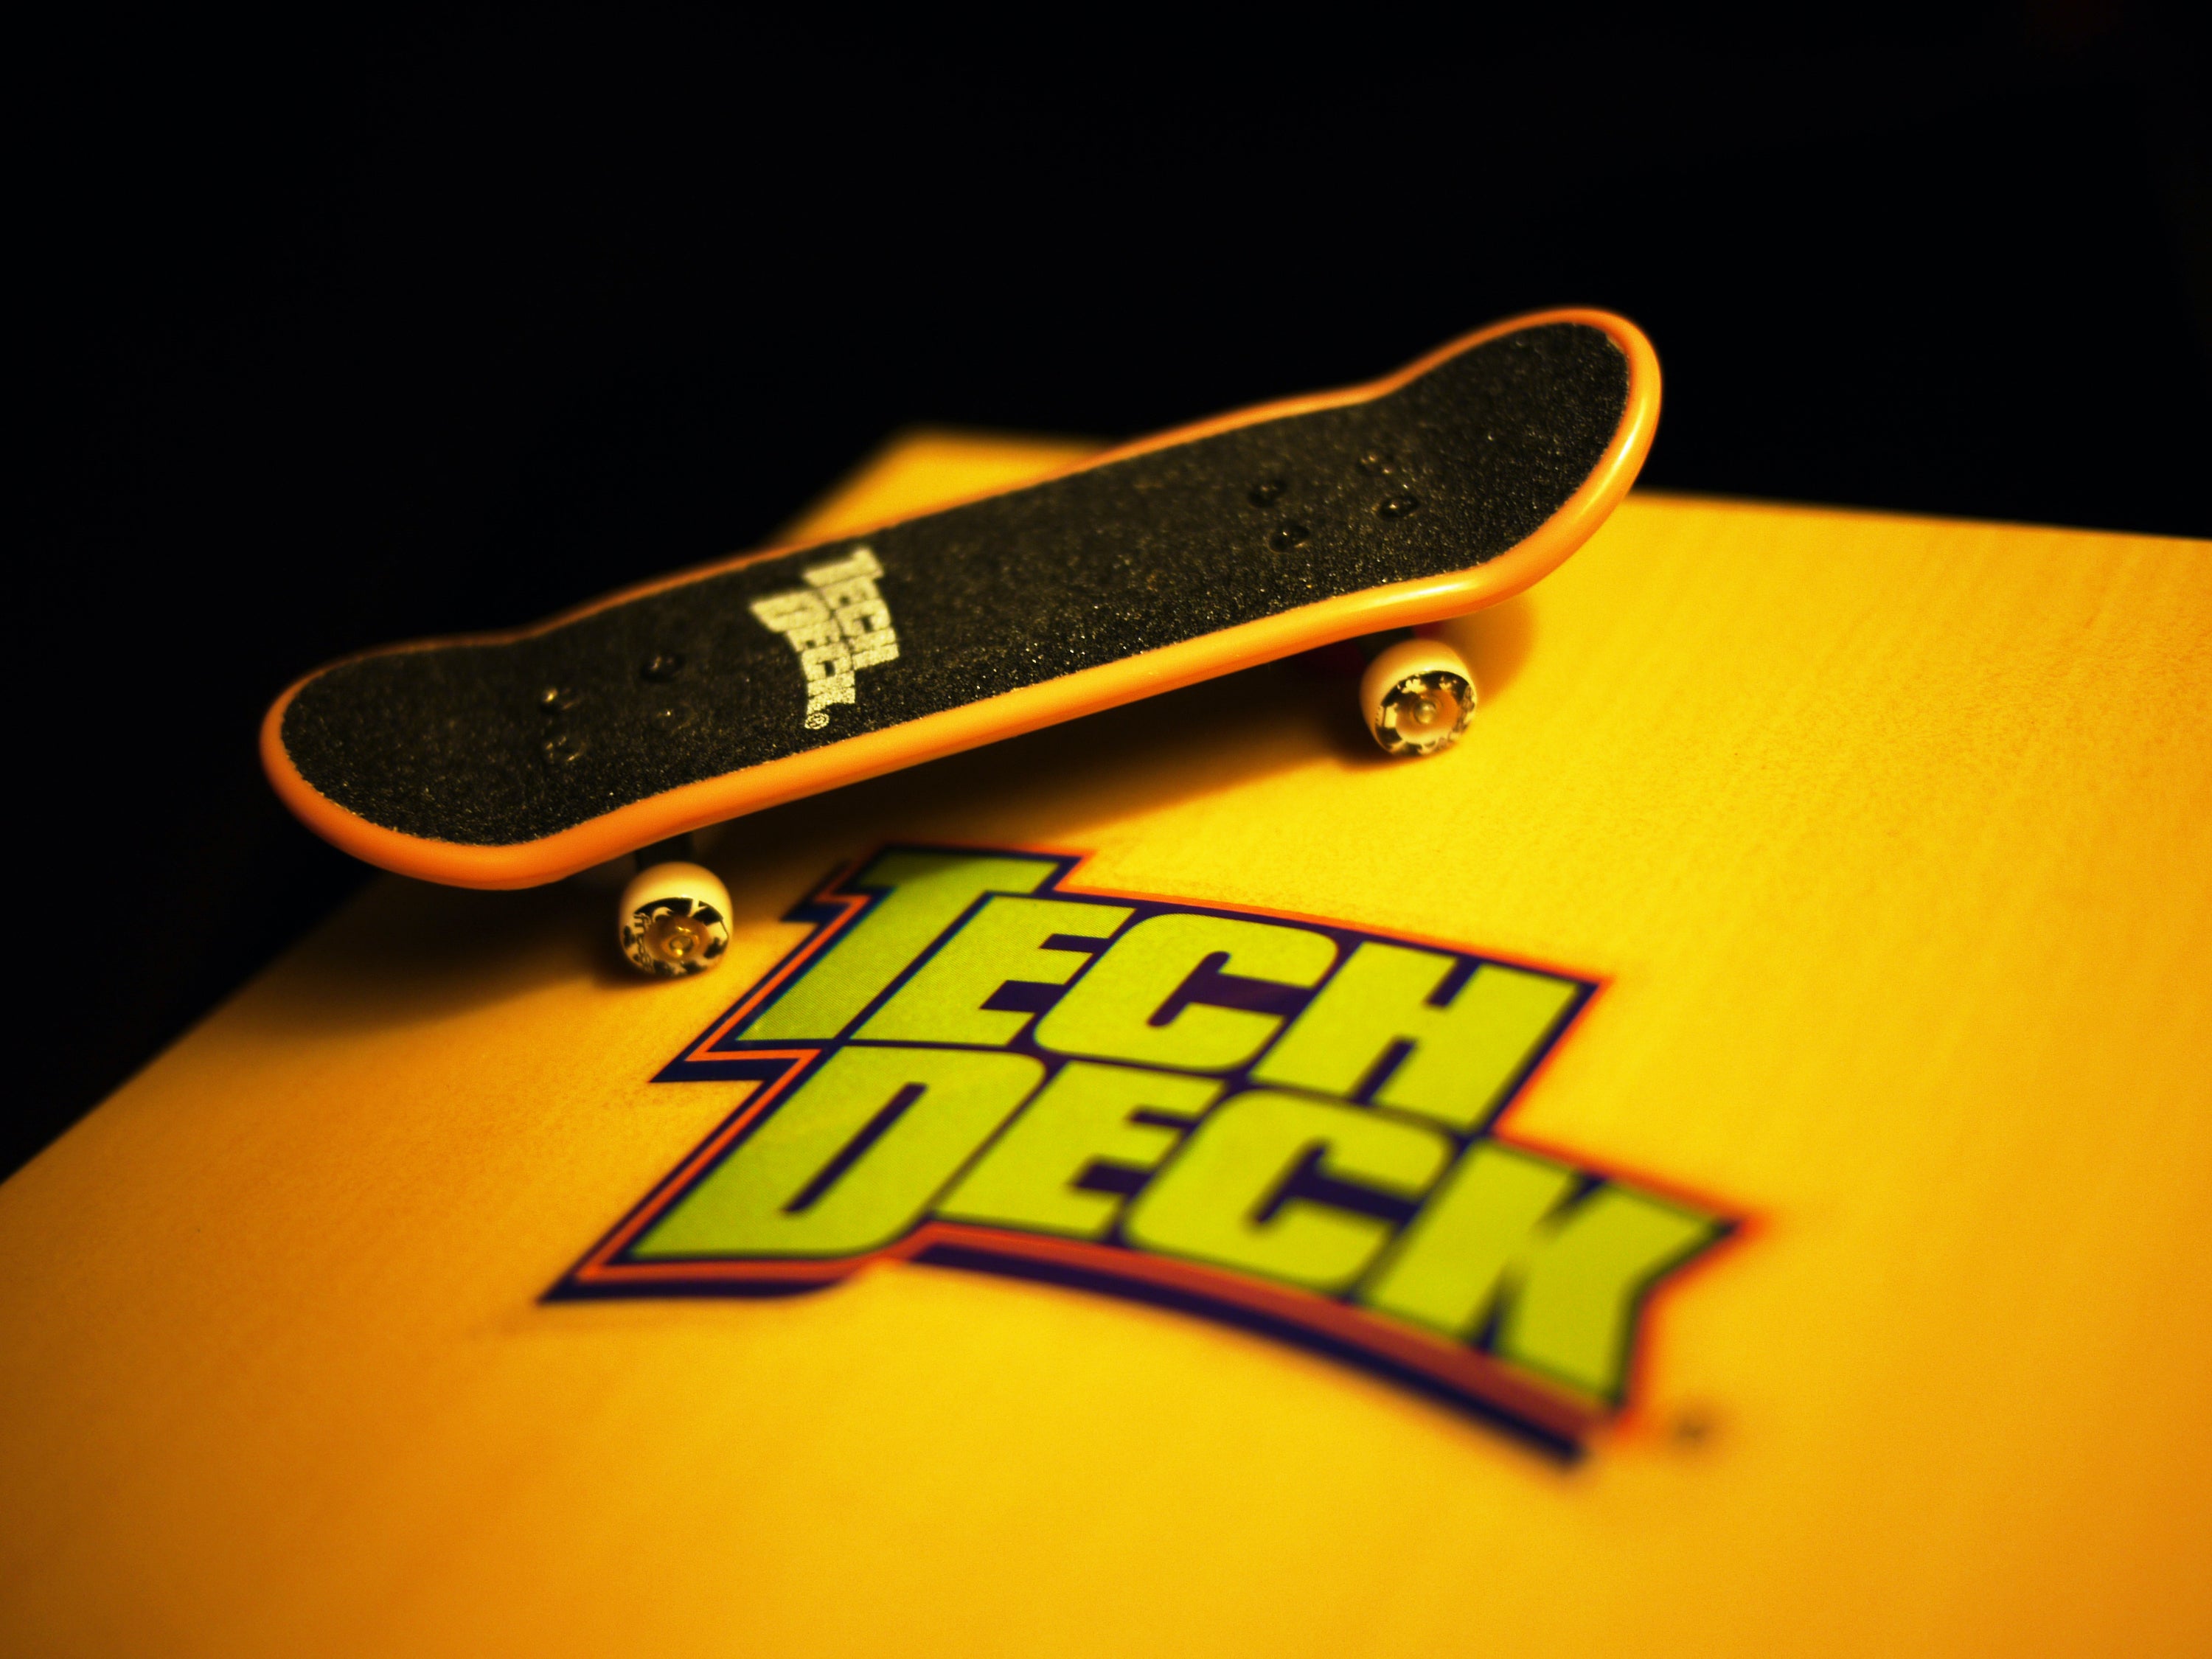 Tech Deck Finger Skateboard Lot - (2) Blind & (3) World Industries +  Accessories